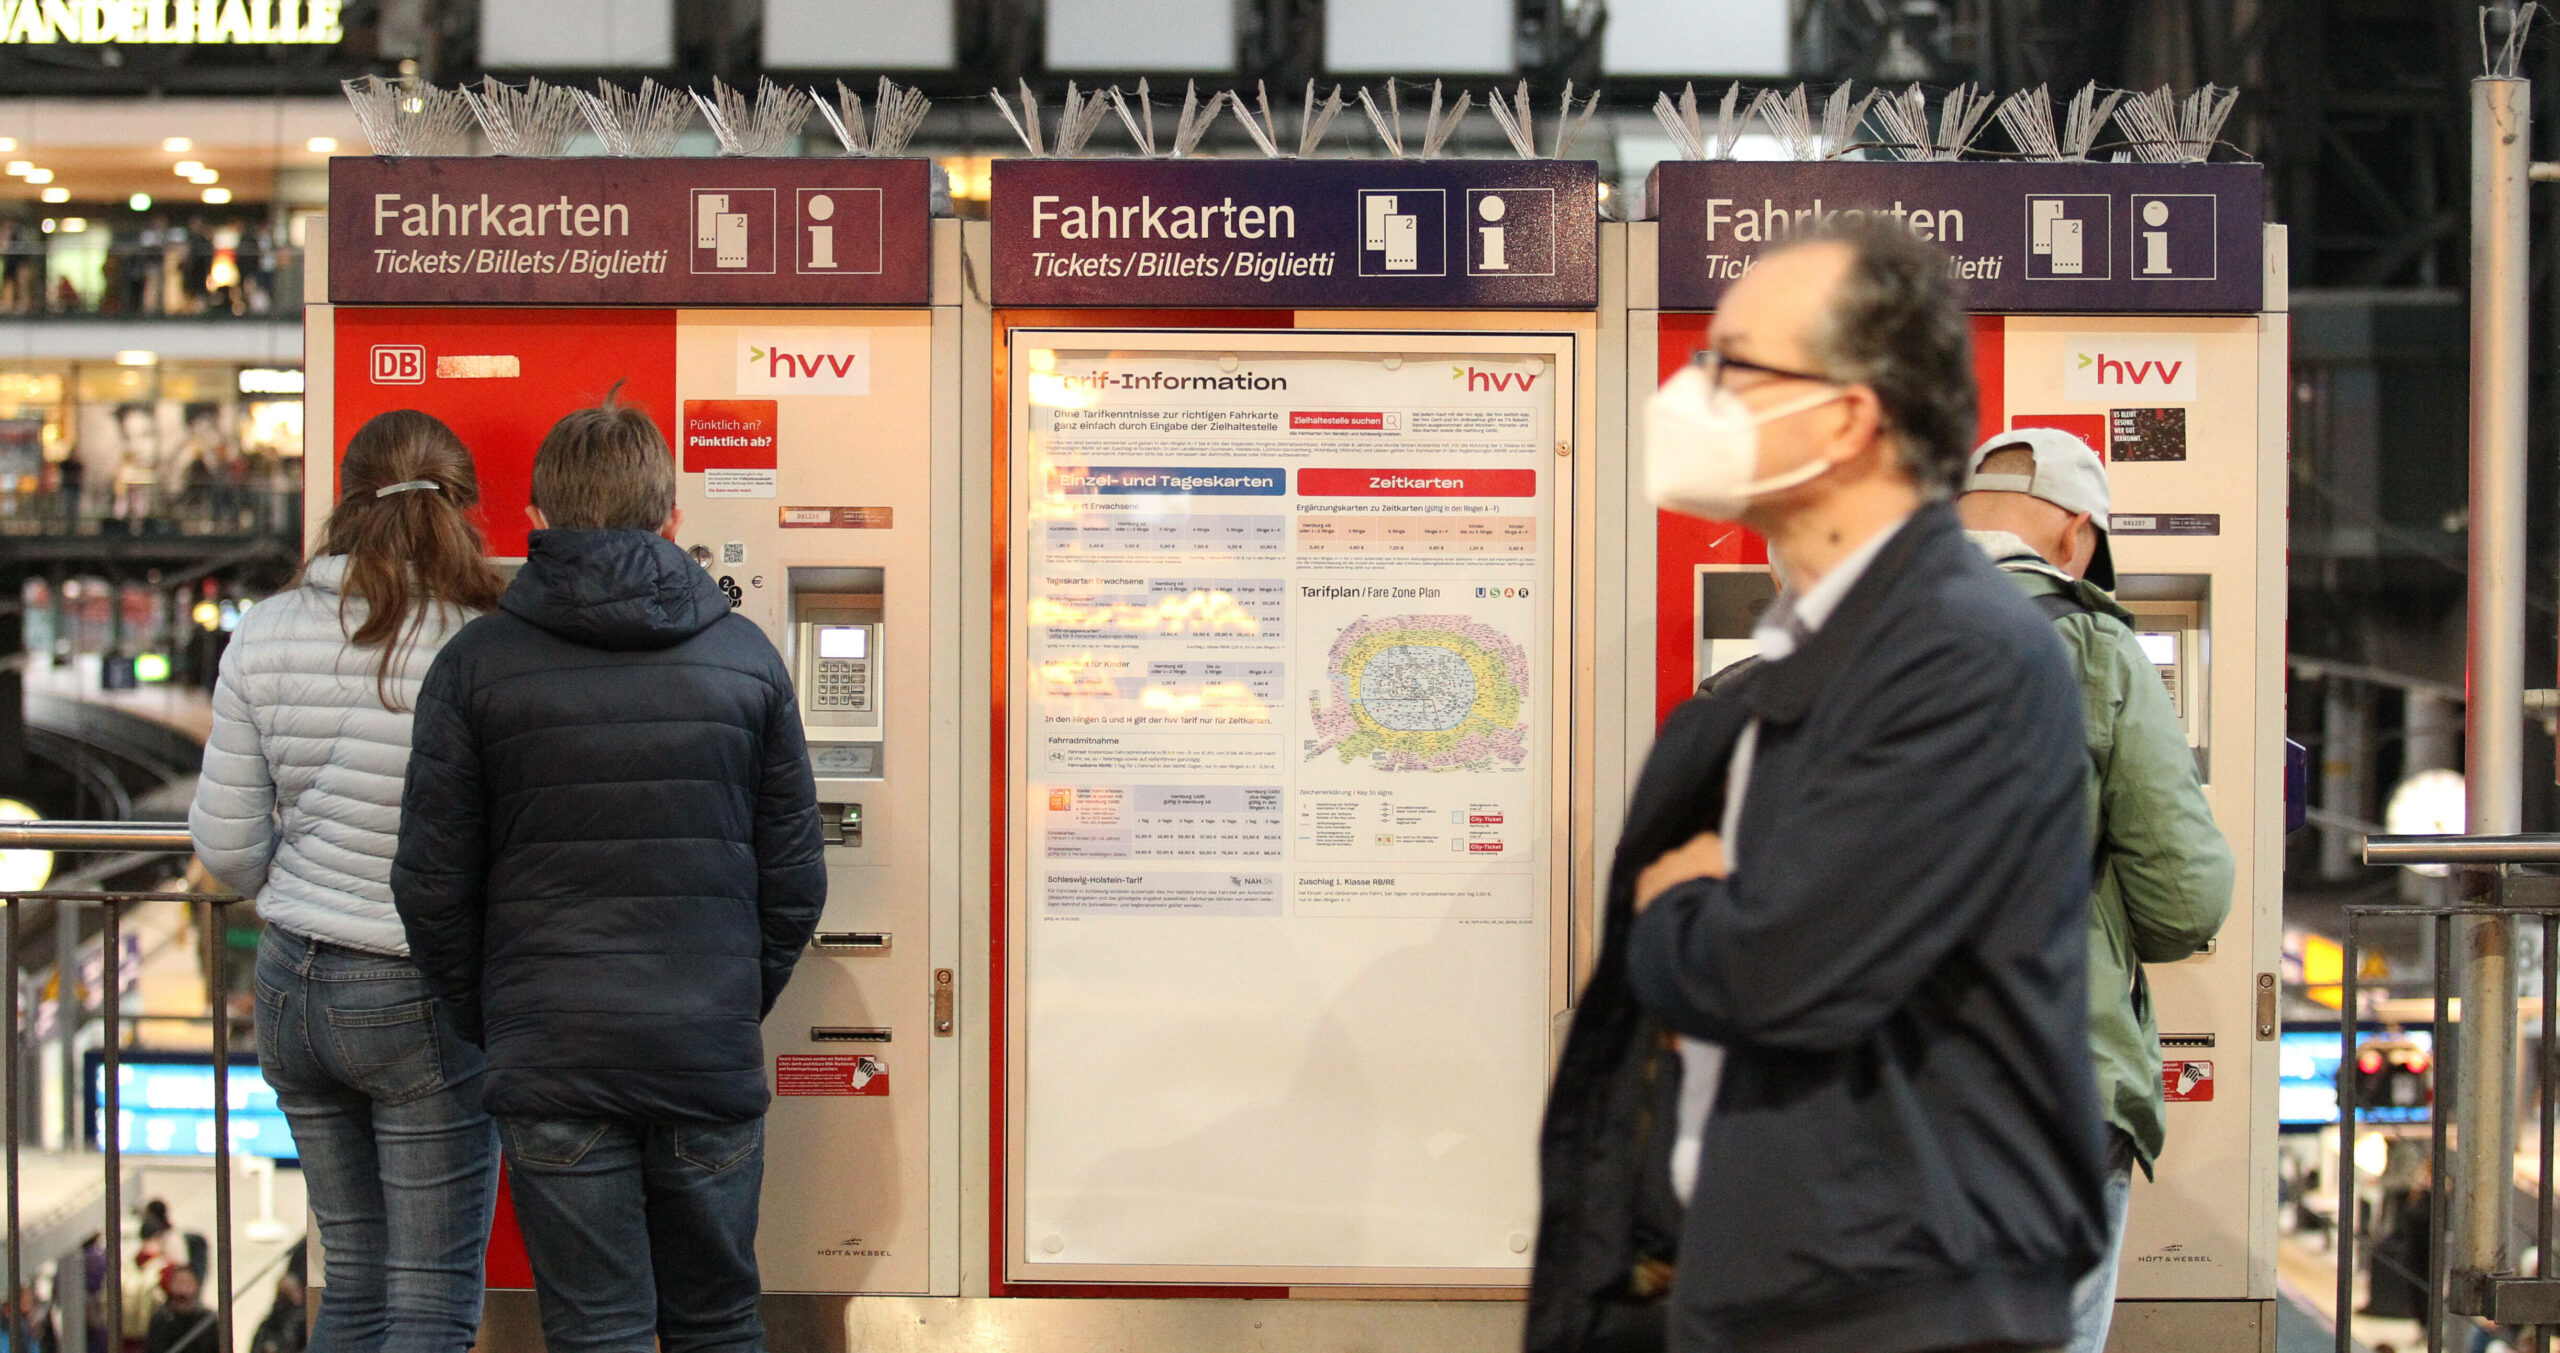 Passanten stehen vor dem Fahrkartenautomat am Hamburger Hauptbahnhof – die Tickets könnten bald deutlich teurer werden.